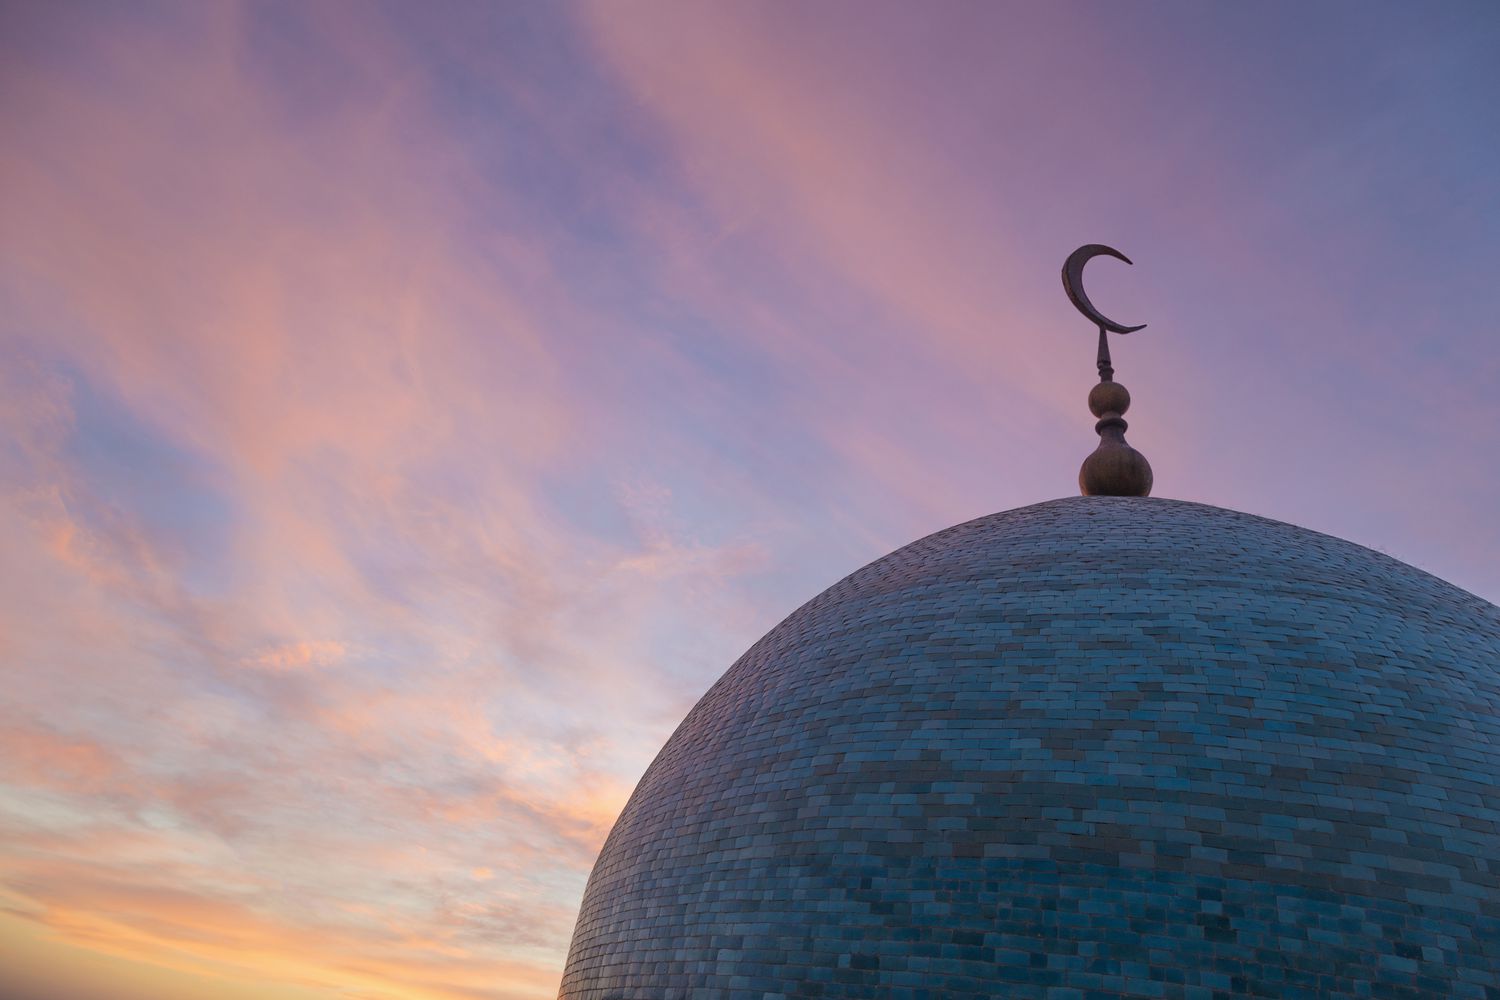 dome-of-mosque-at-dusk-700712709-5aa7ff240e23d9003705318e